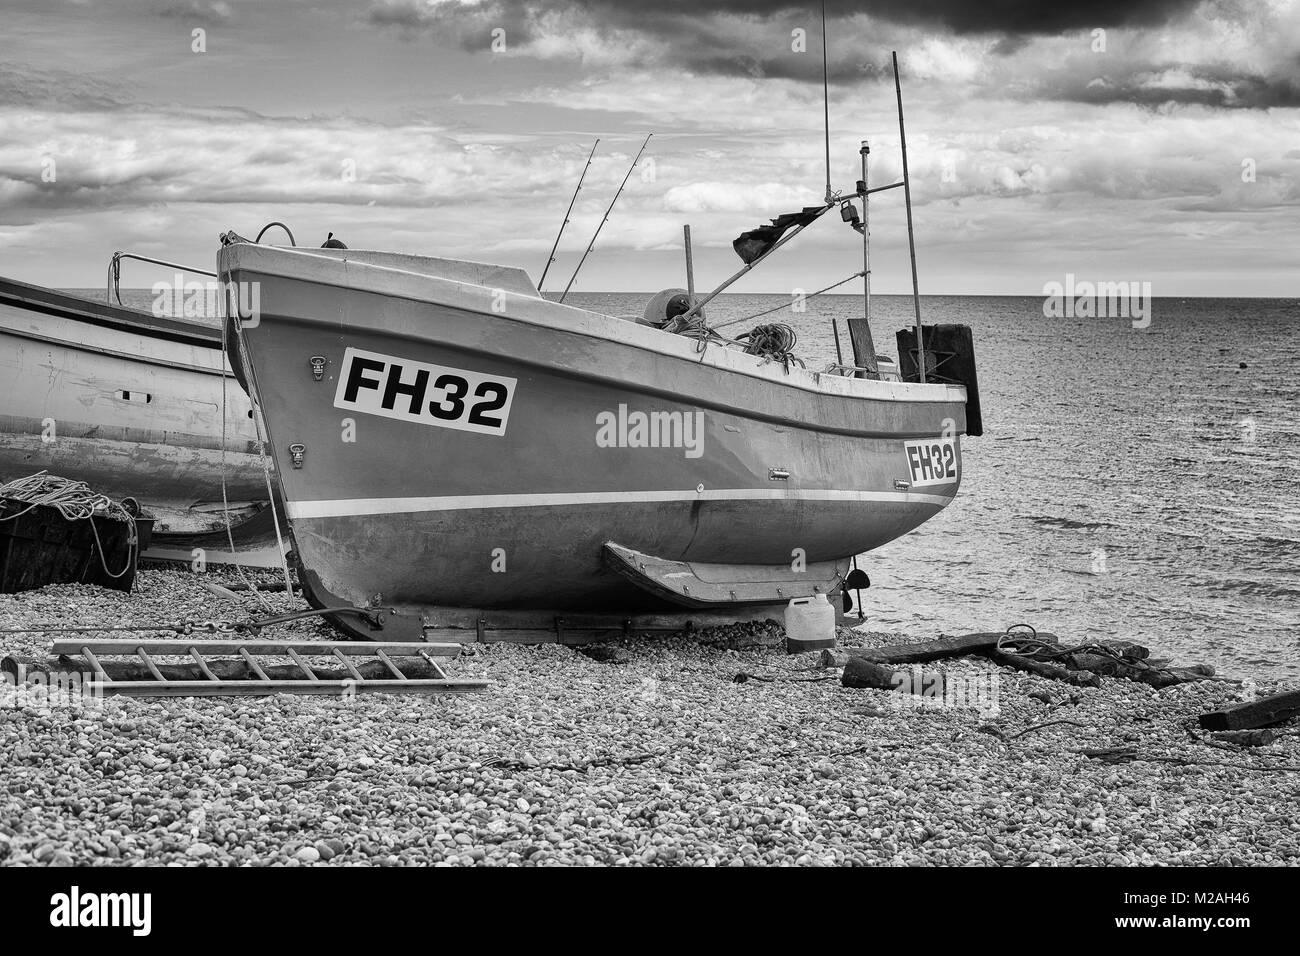 Bateau de pêche sur la plage de Sidmouth (bière), Dorset UK. Tourné en noir et blanc Banque D'Images